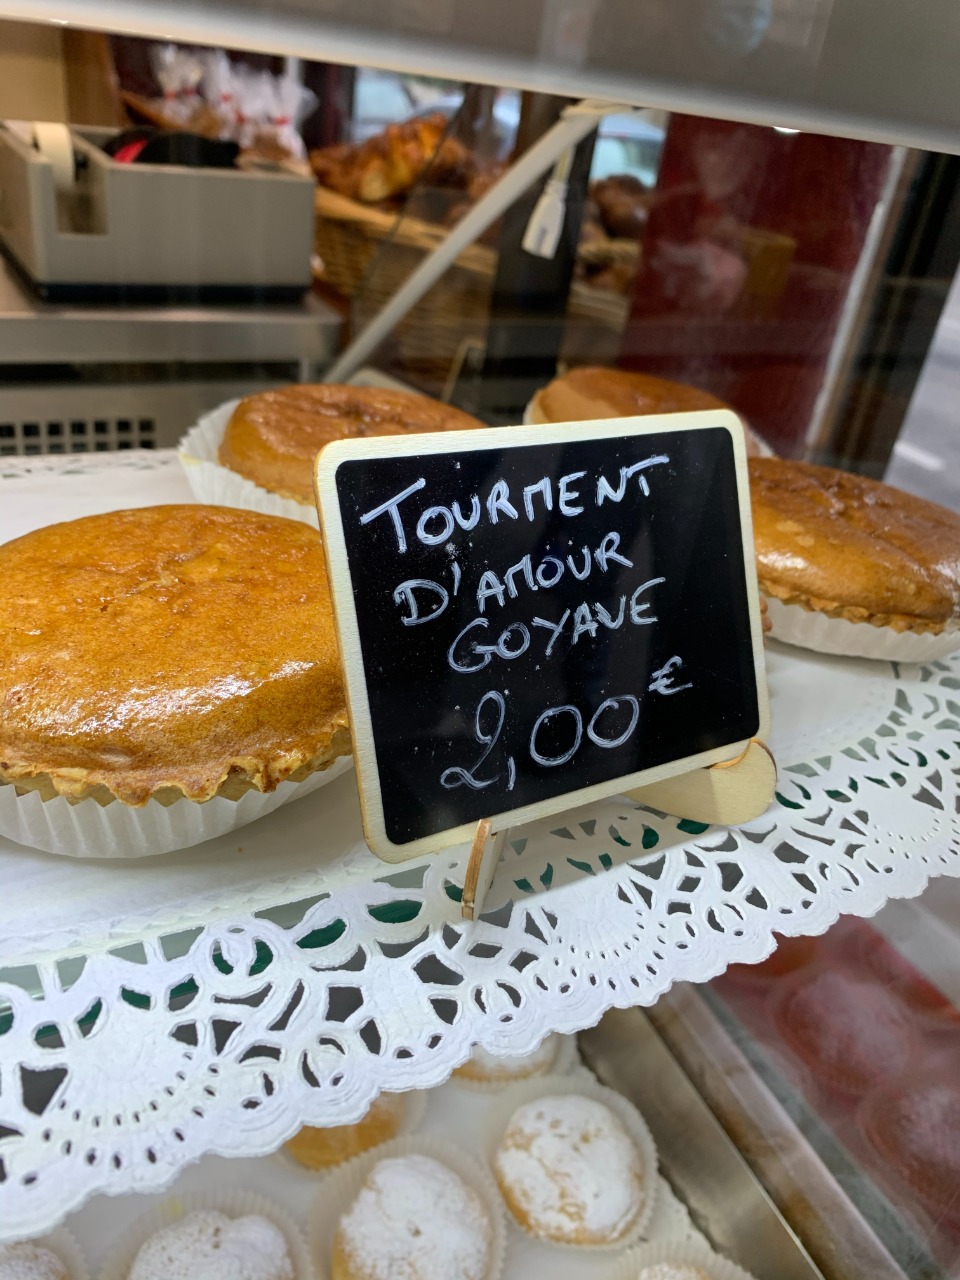     Une pâtisserie 100% locale voit le jour en plein Paris et en pleine crise sanitaire

